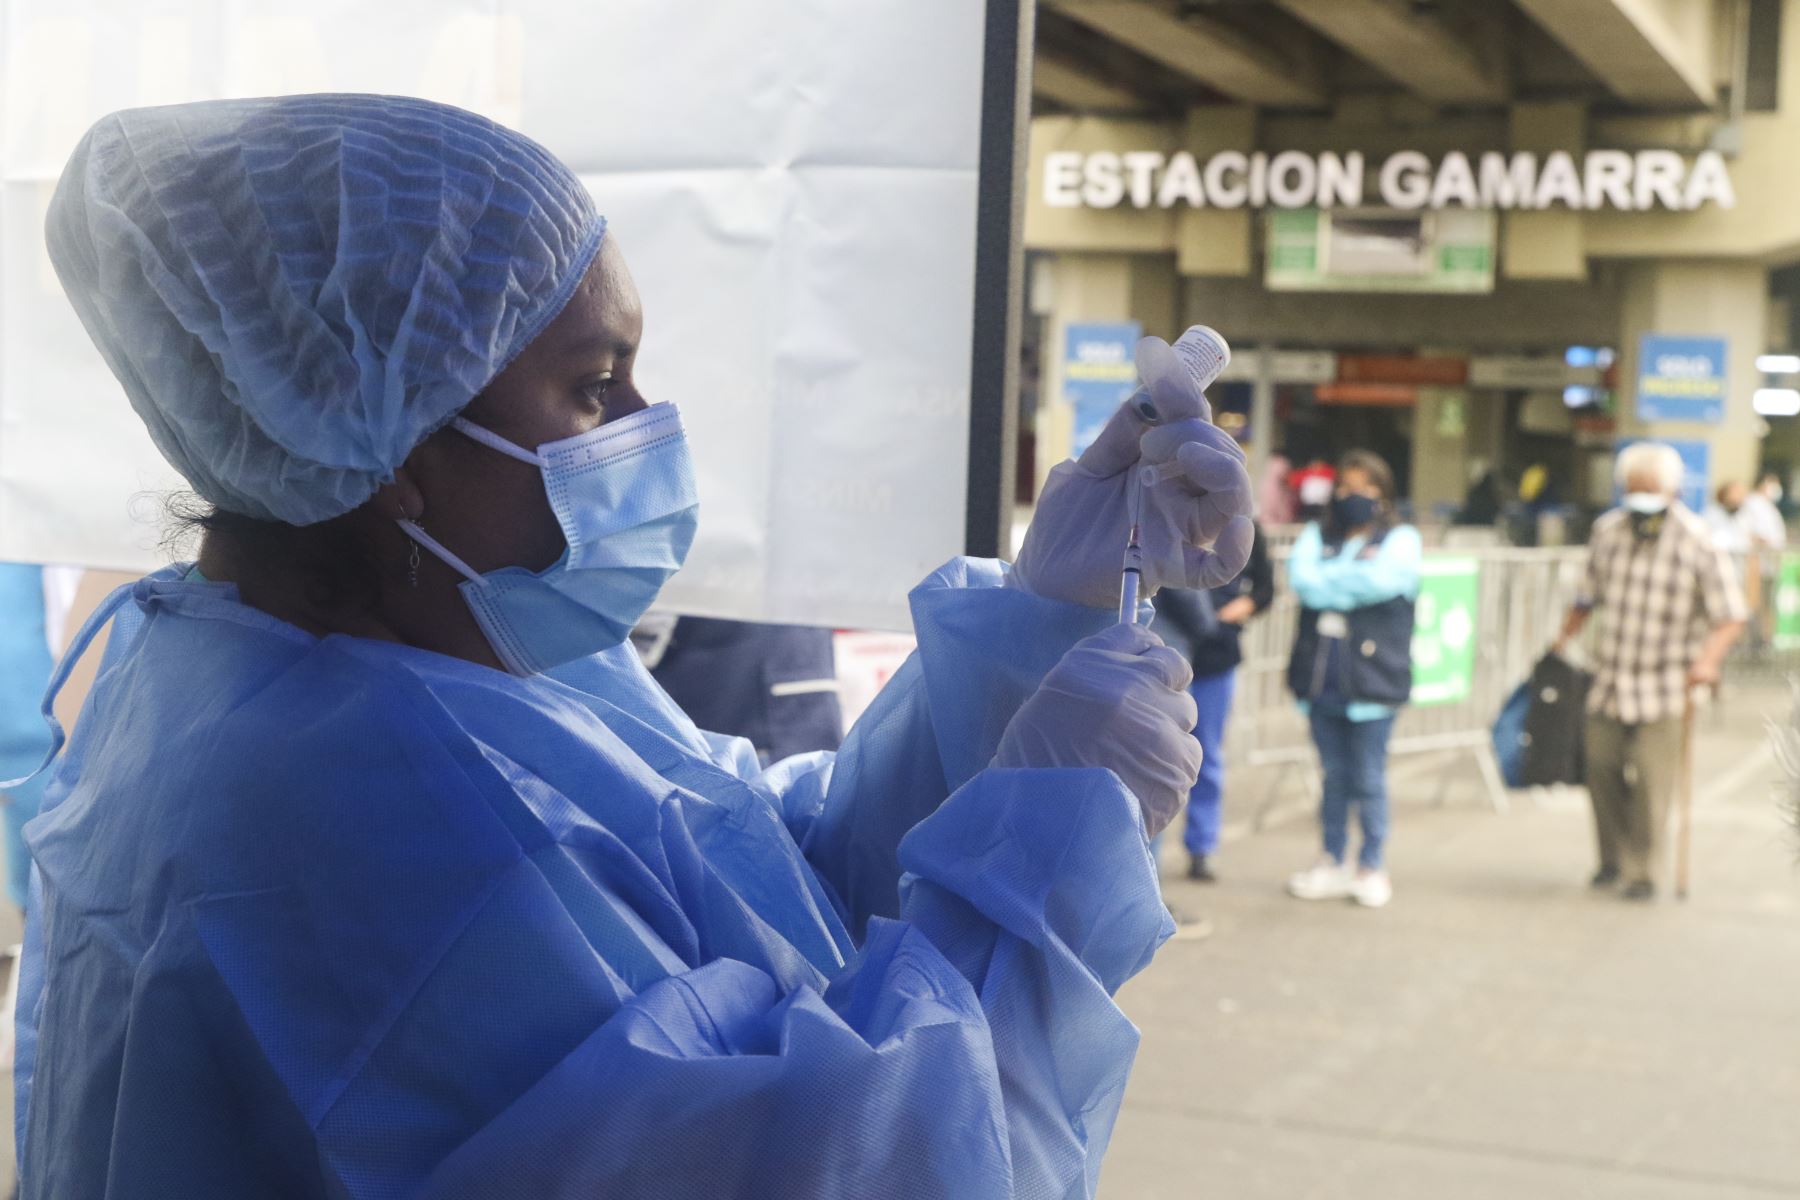 Ministerio de Salud realizó campaña de vacunación contra la Covid 19 y otras enfermedades a los usuarios de la Estación Gamarra de la Línea 1 del Metro de Lima. Foto: ANDINA/Eddy Ramos